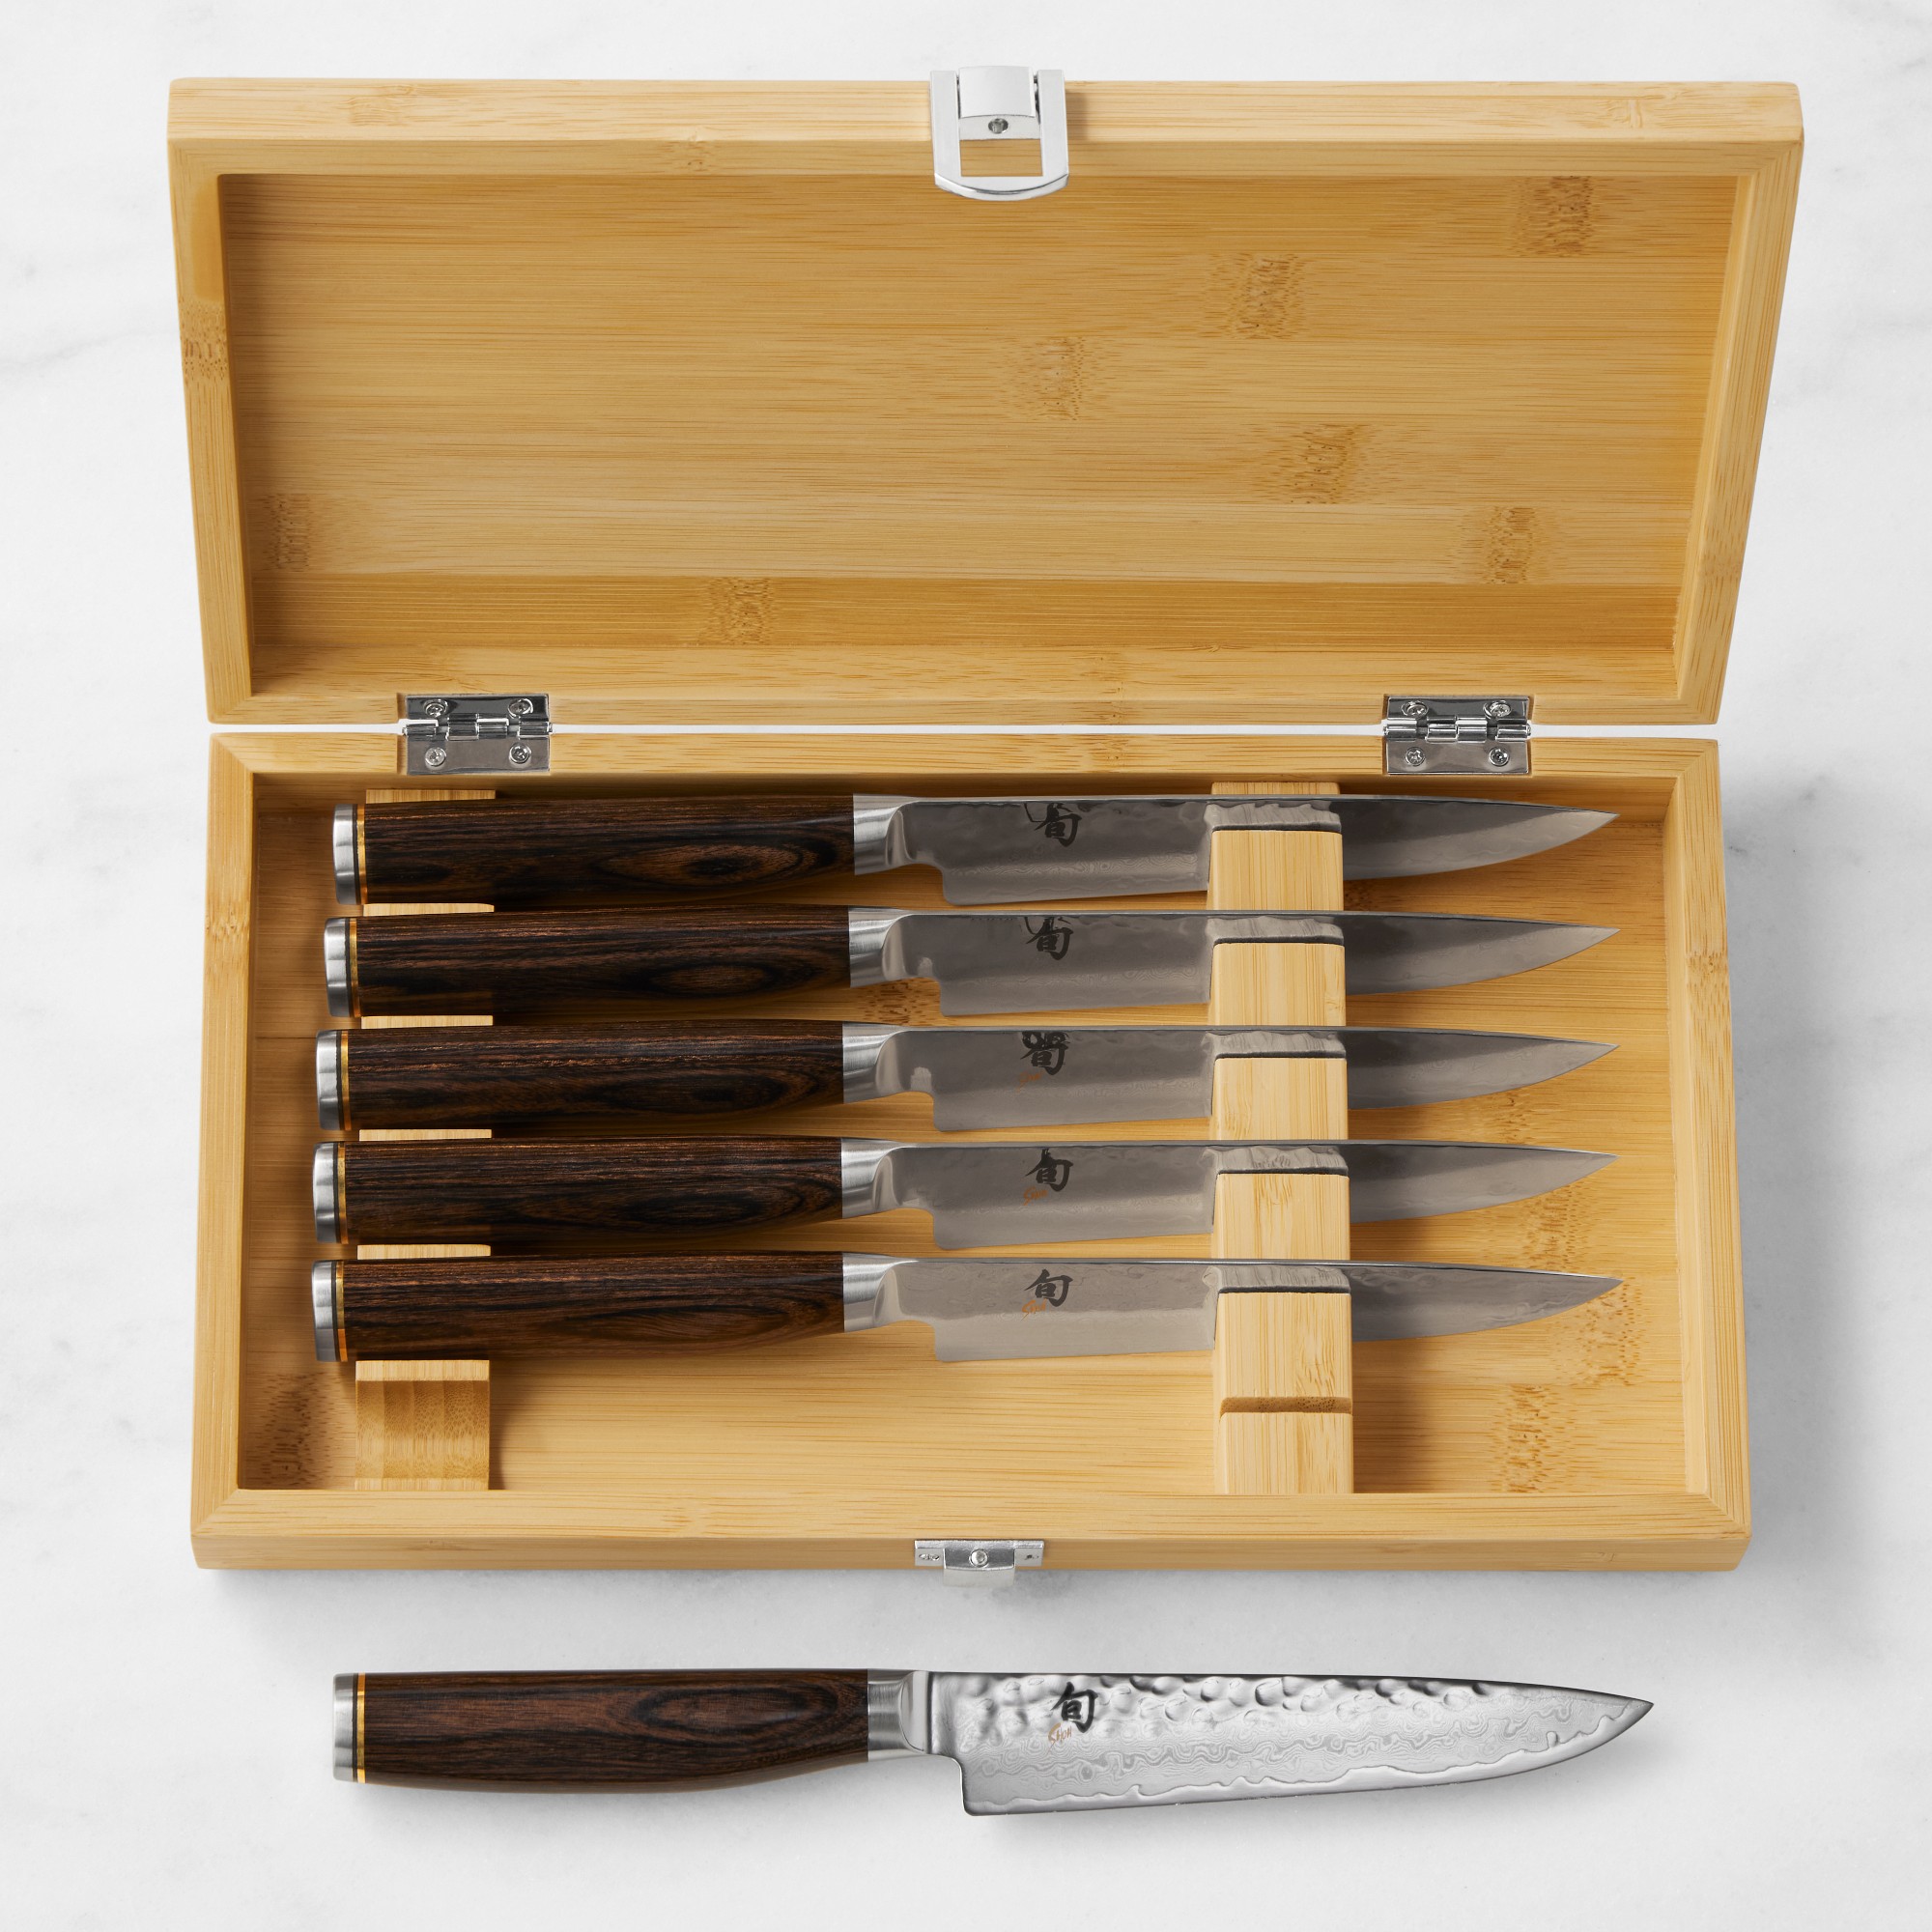 Shun Premier Steak Knives in Bamboo Box, Set of 6